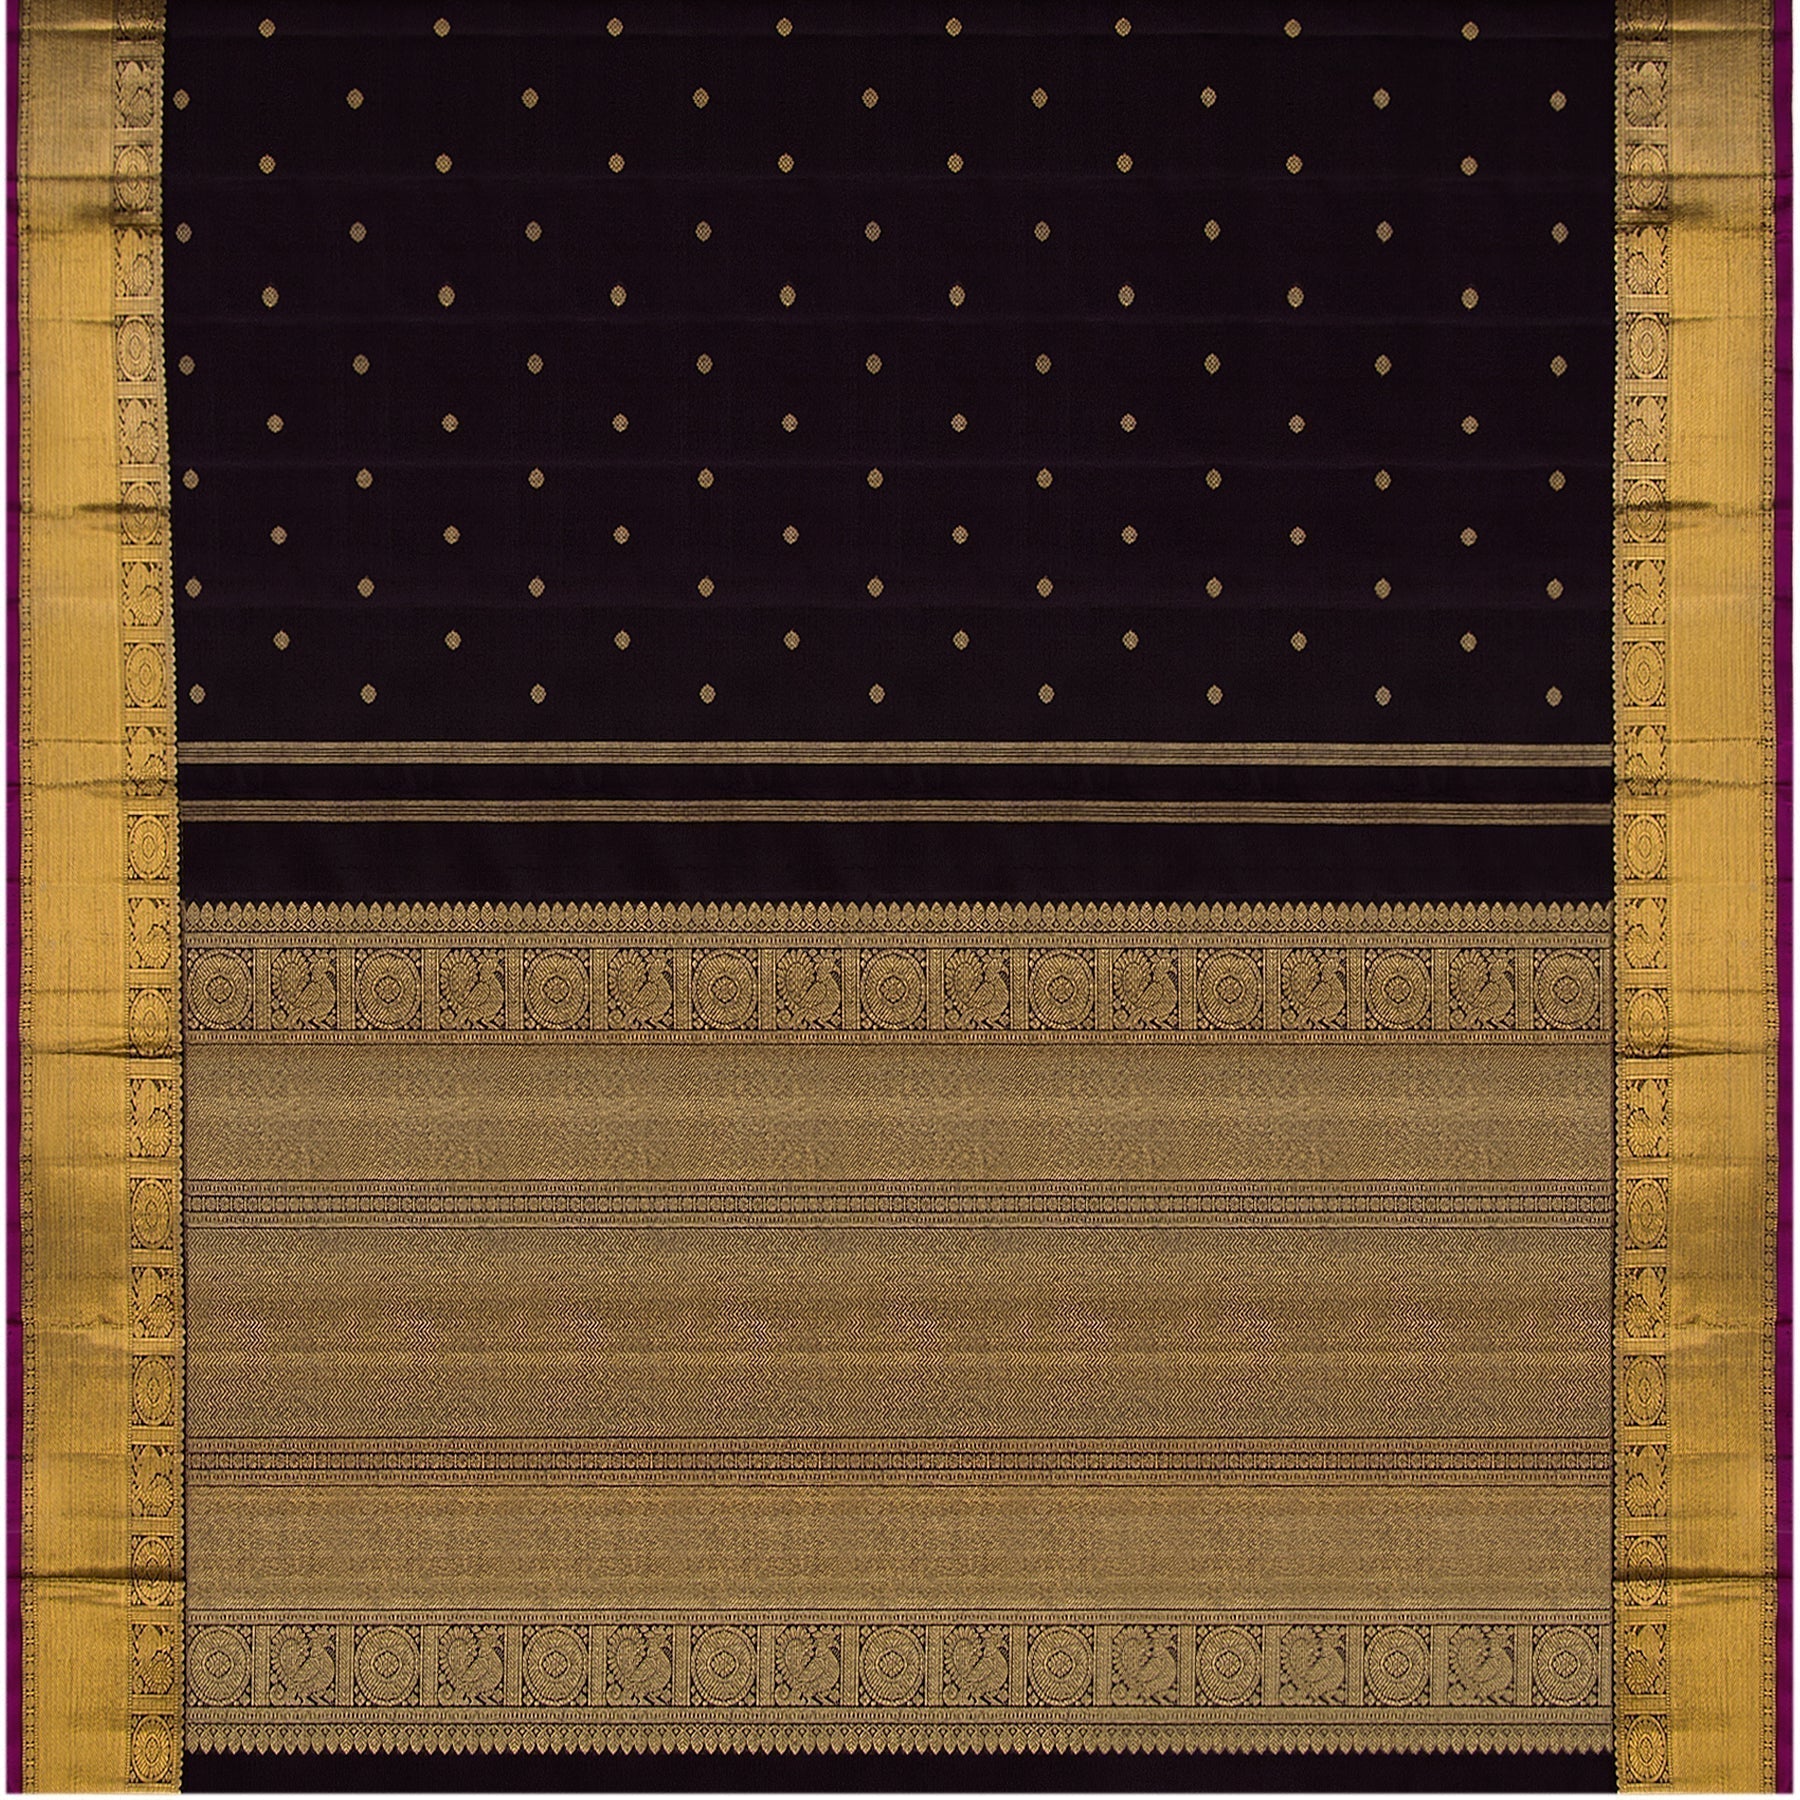 Kanakavalli Kanjivaram Silk Sari 22-595-HS001-02455 - Full View